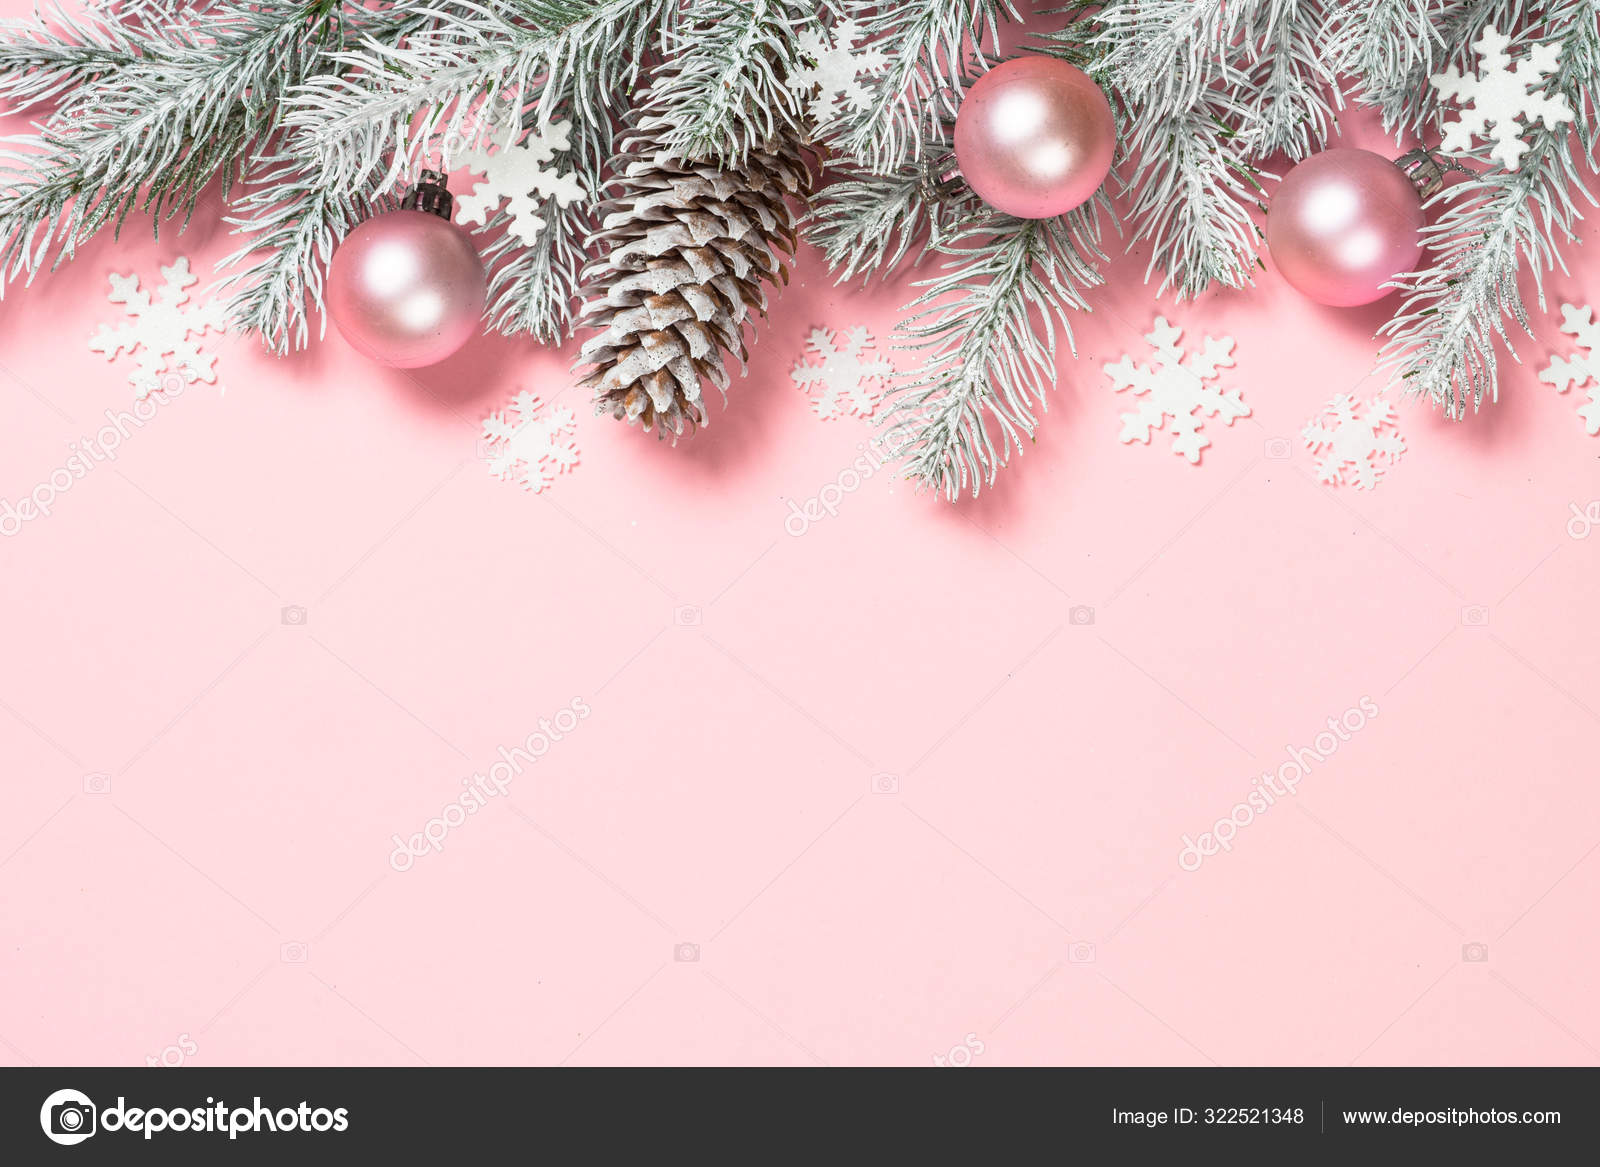 Hình nền phẳng Giáng sinh với hộp quà Giáng sinh trên nền hồng: Bạn đang tìm kiếm một hình nền phẳng đơn giản, nhưng vẫn gợi nhớ đến mùa Giáng sinh? Hình nền Giáng sinh với hộp quà trên nền hồng sẽ là sự lựa chọn hoàn hảo cho bạn! Với hình ảnh ngộ nghĩnh, dễ thương của hộp quà, bạn sẽ có một hình nền đầy phong cách và tuyệt vời.